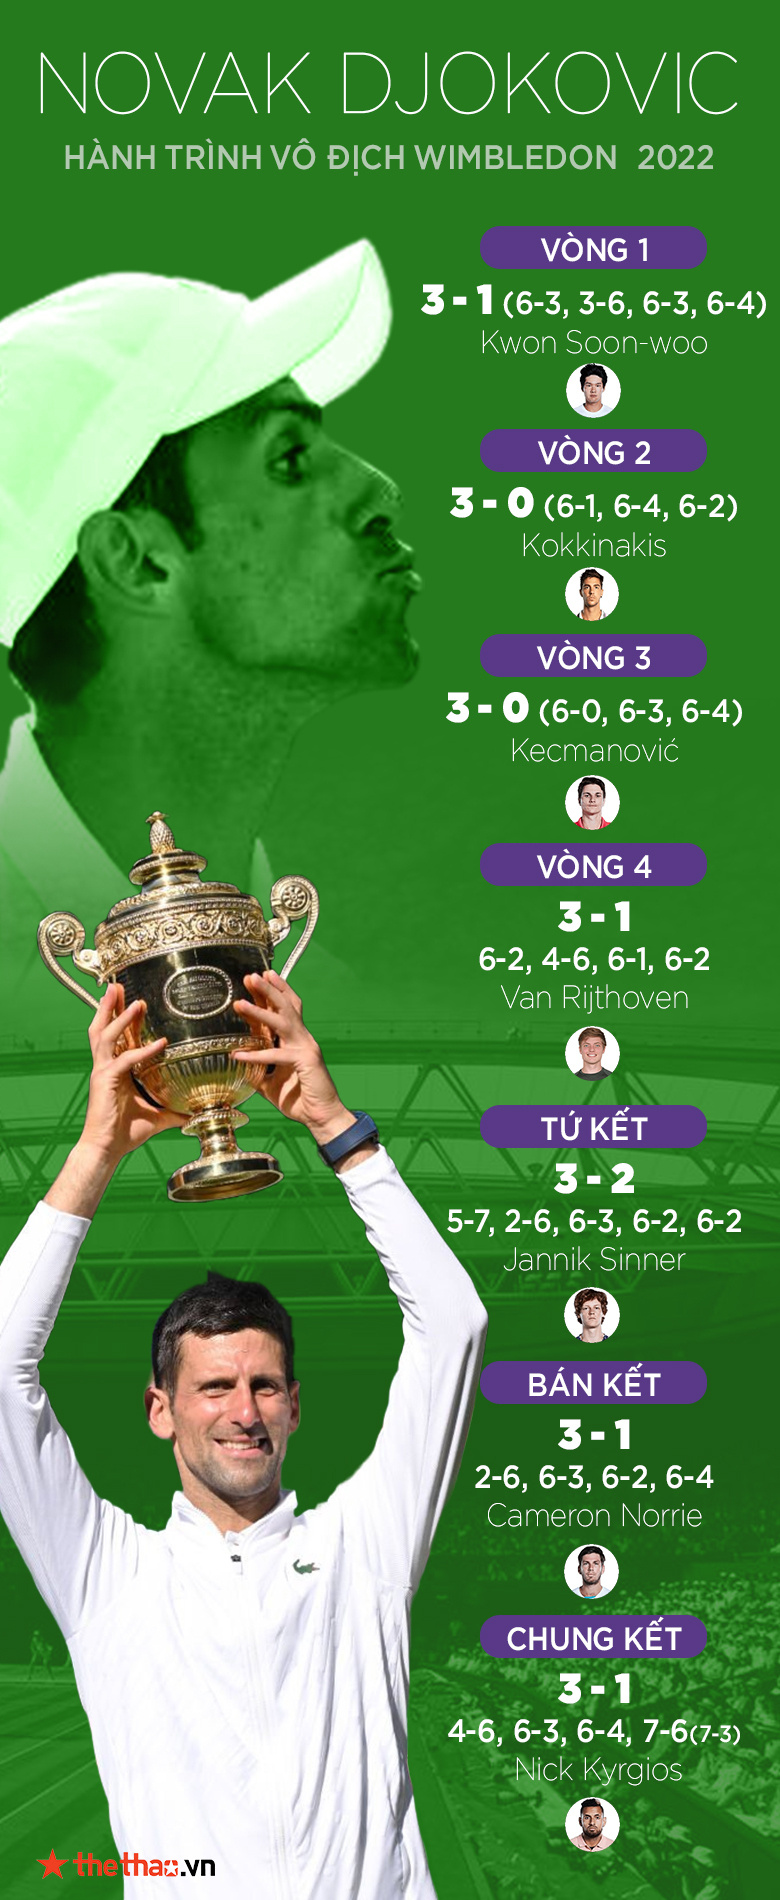 Hành trình vô địch Wimbledon 2022 của Djokovic: Ông Vua ngược dòng - Ảnh 3